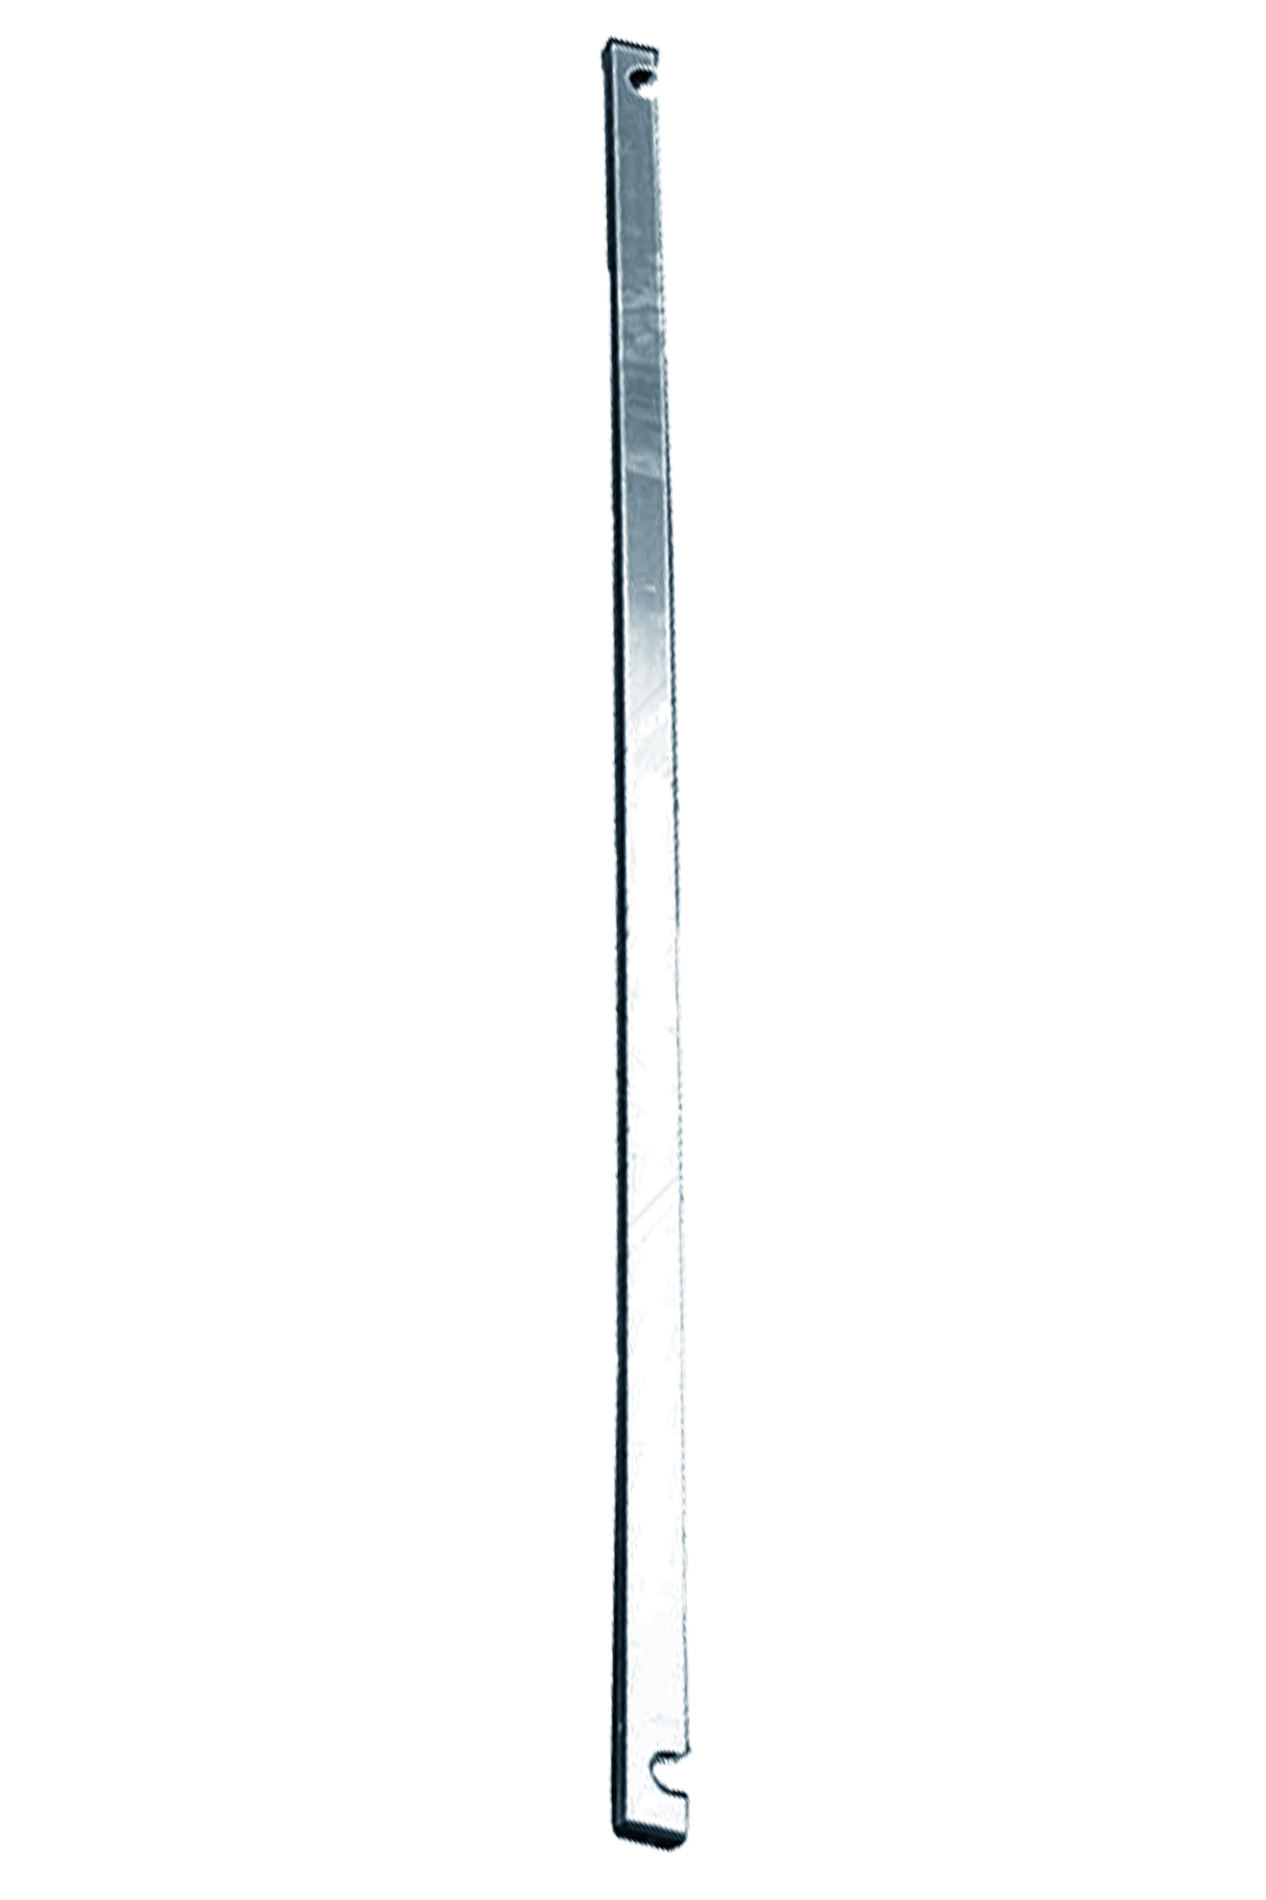 Дополнительное изображение Stabilo серии 1000 рабочая высота 10,2 м, размер площадки (3x0.75 м)